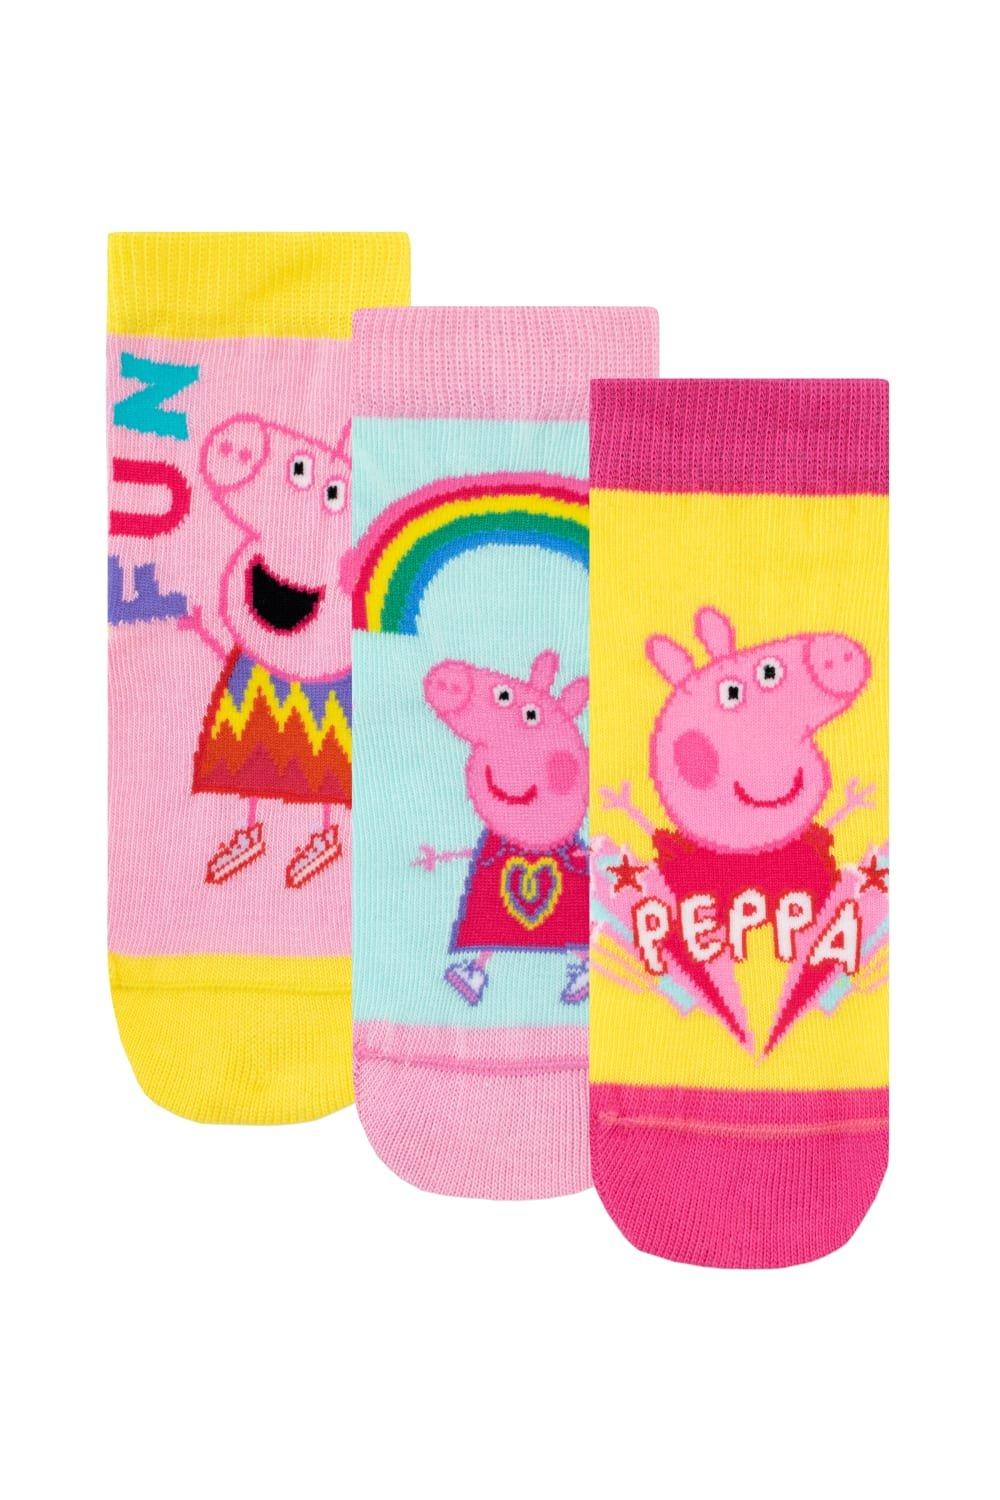 Набор носков Rainbow Fun, 3 шт. Peppa Pig, розовый набор подарочный свинка пеппа учиться весело